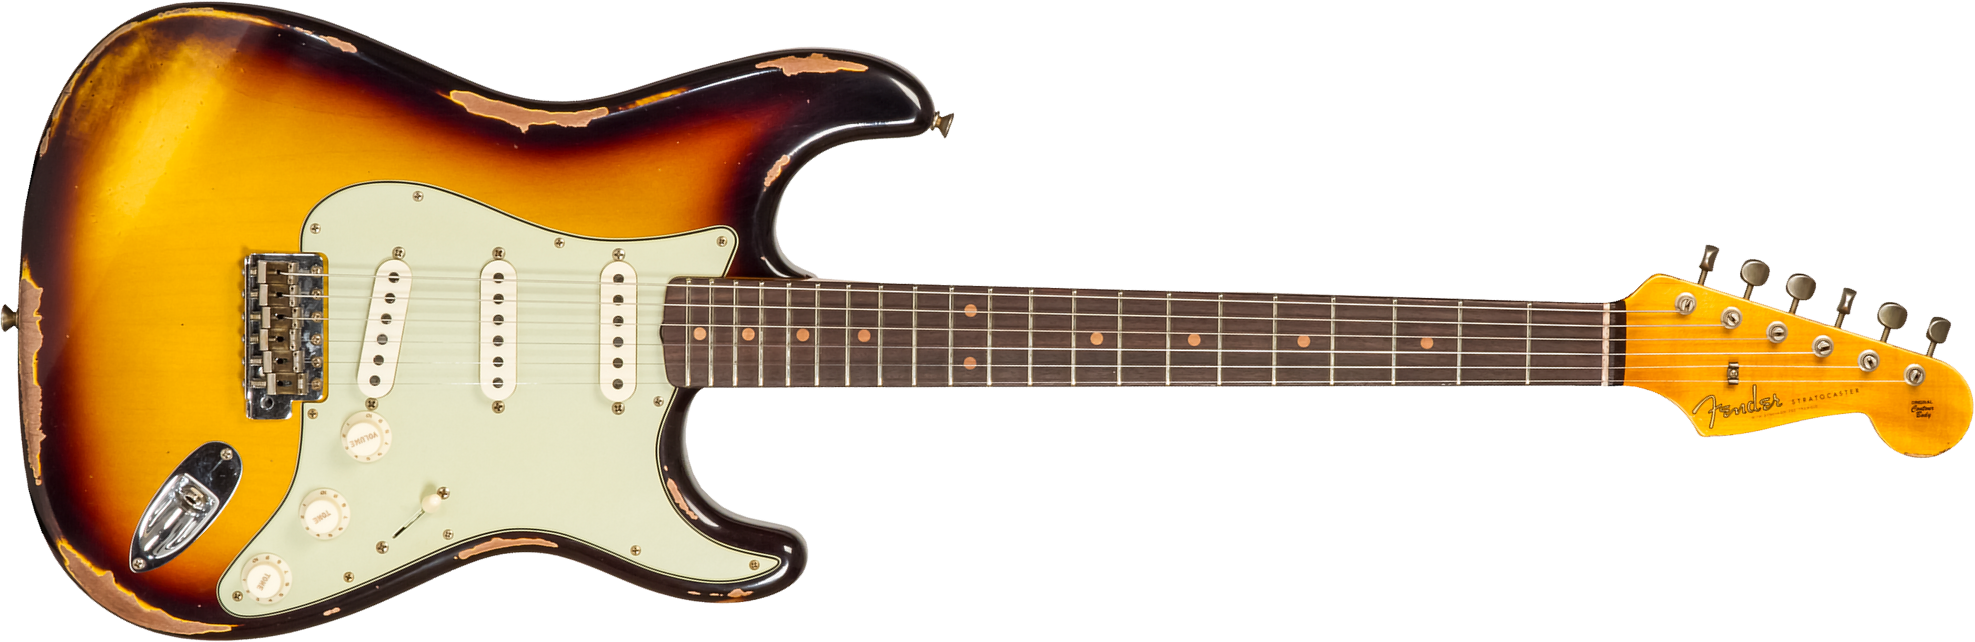 Fender Custom Shop Strat 1961 3s Trem Rw #cz573663 - Heavy Relic Aged 3-color Sunburst - Guitarra eléctrica con forma de str. - Main picture